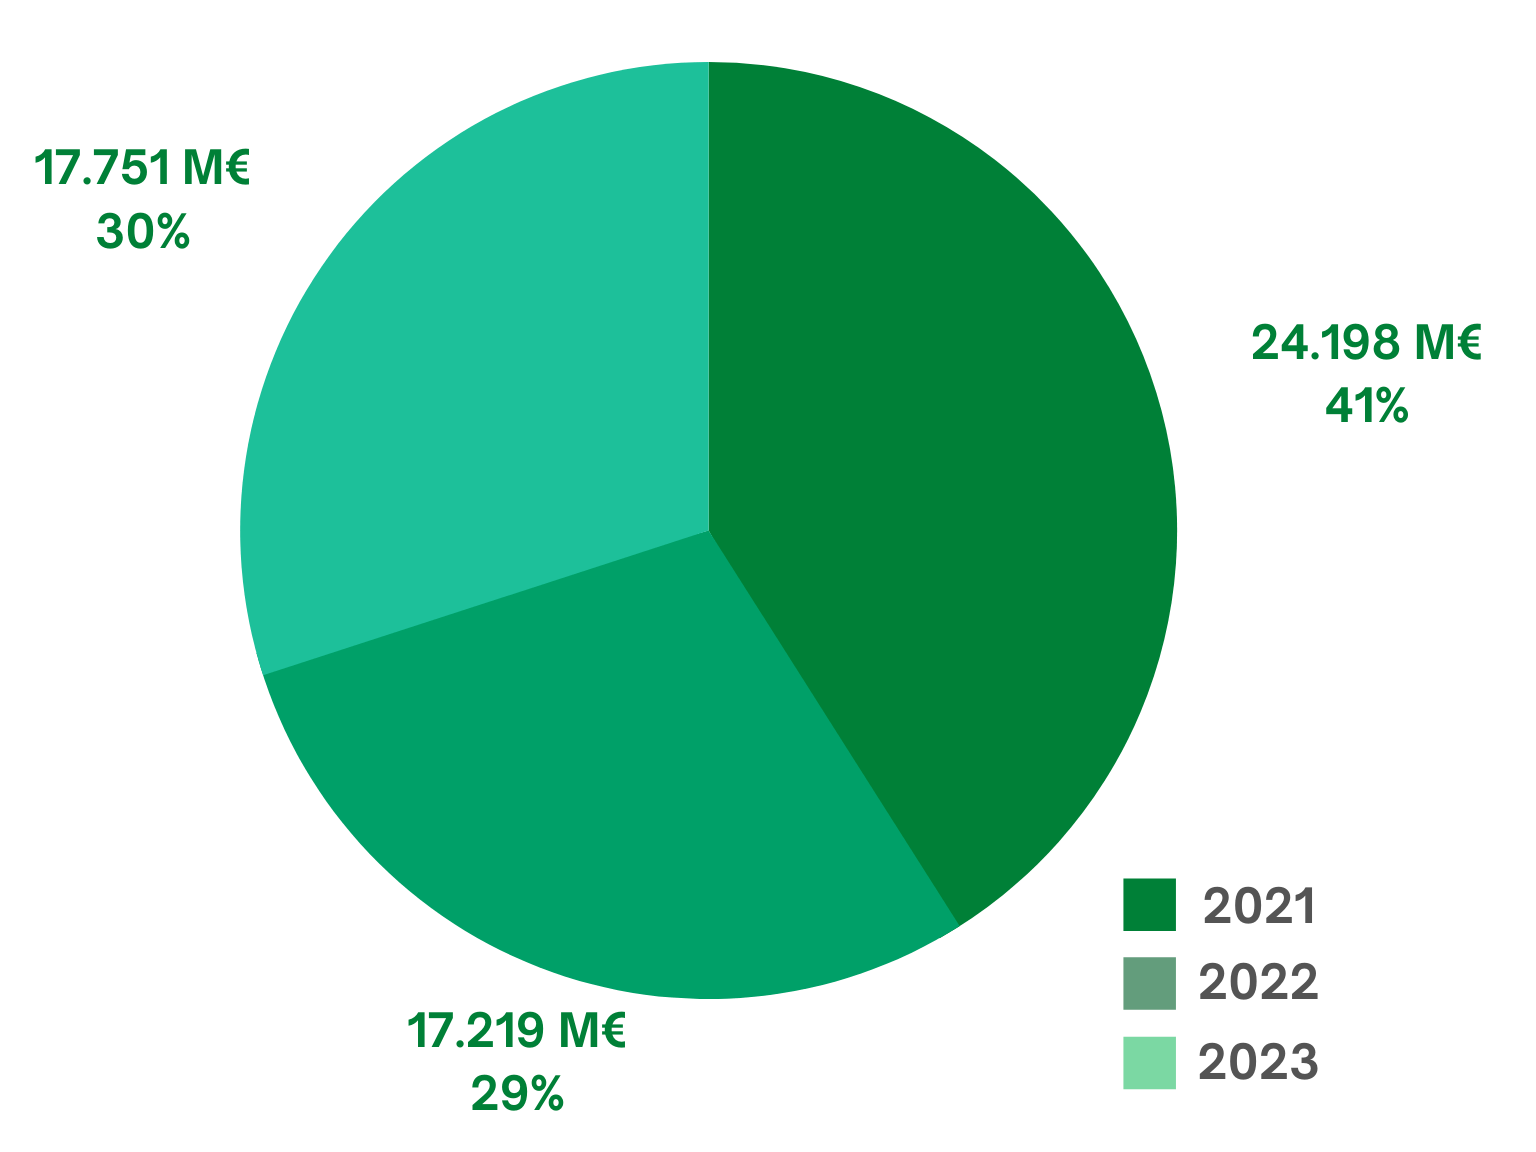 grafico Distribución PGE   |  59.169 M€